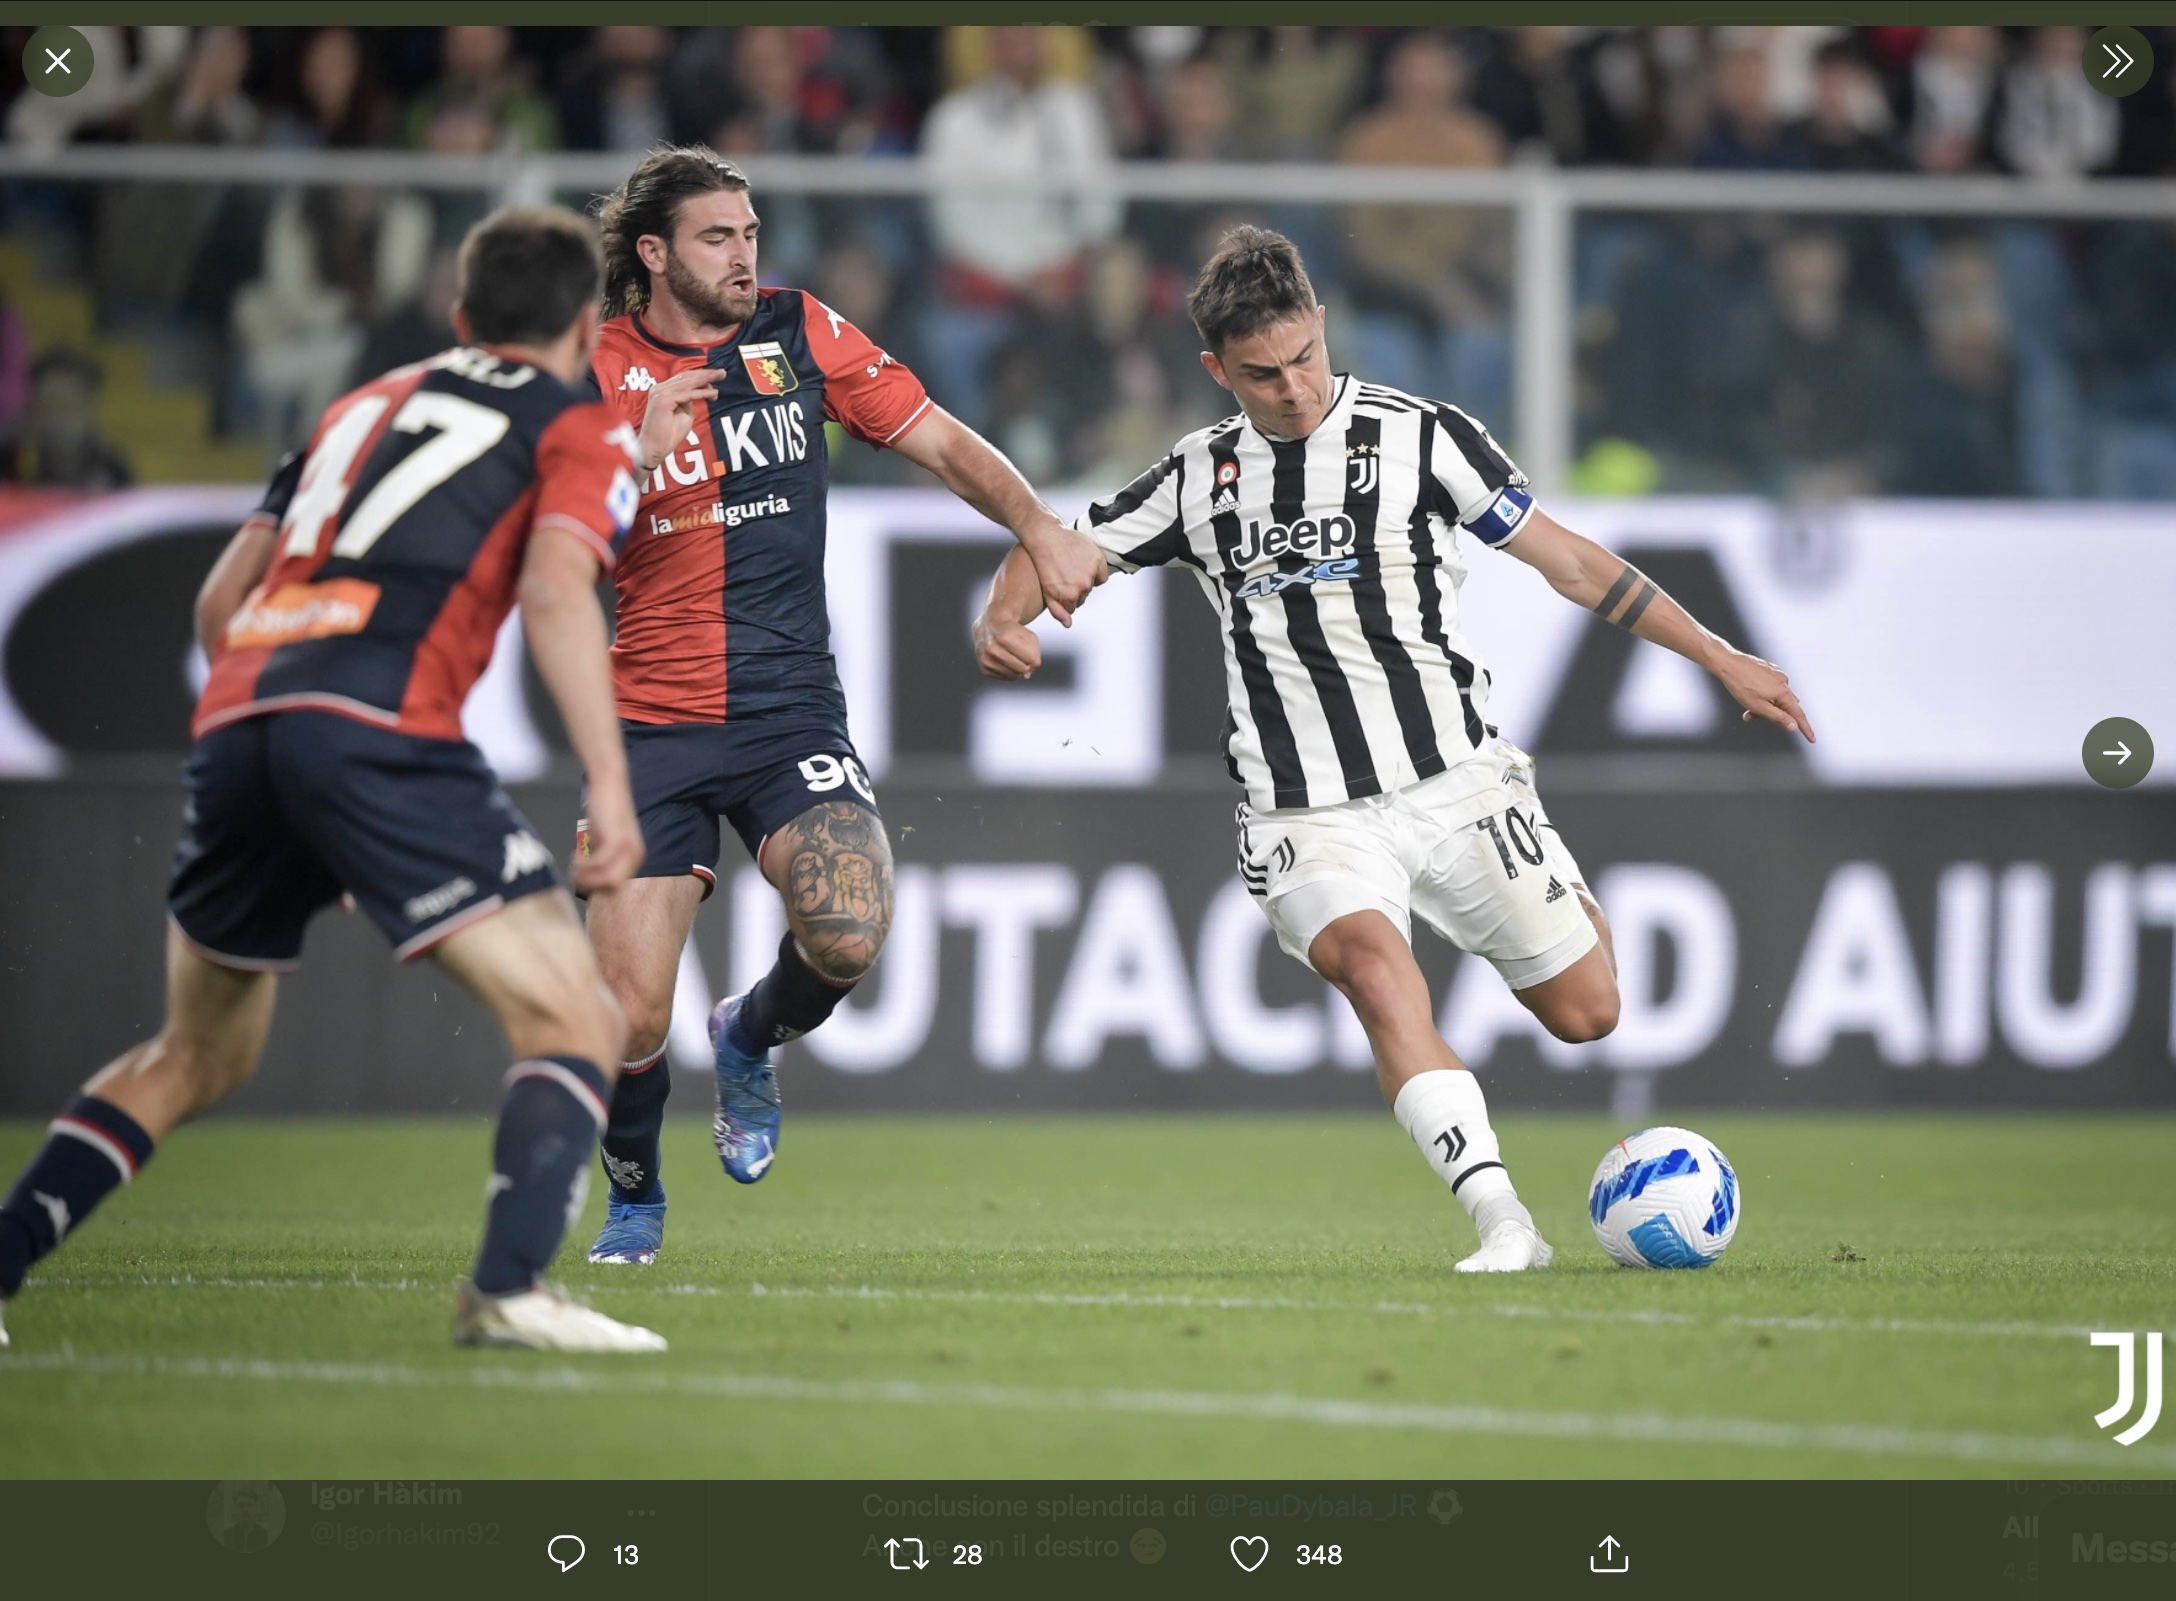 Hasil Genoa vs Juventus: Gagal Manfaatkan Peluang, I Bianconeri Keok di Luigi Ferraris